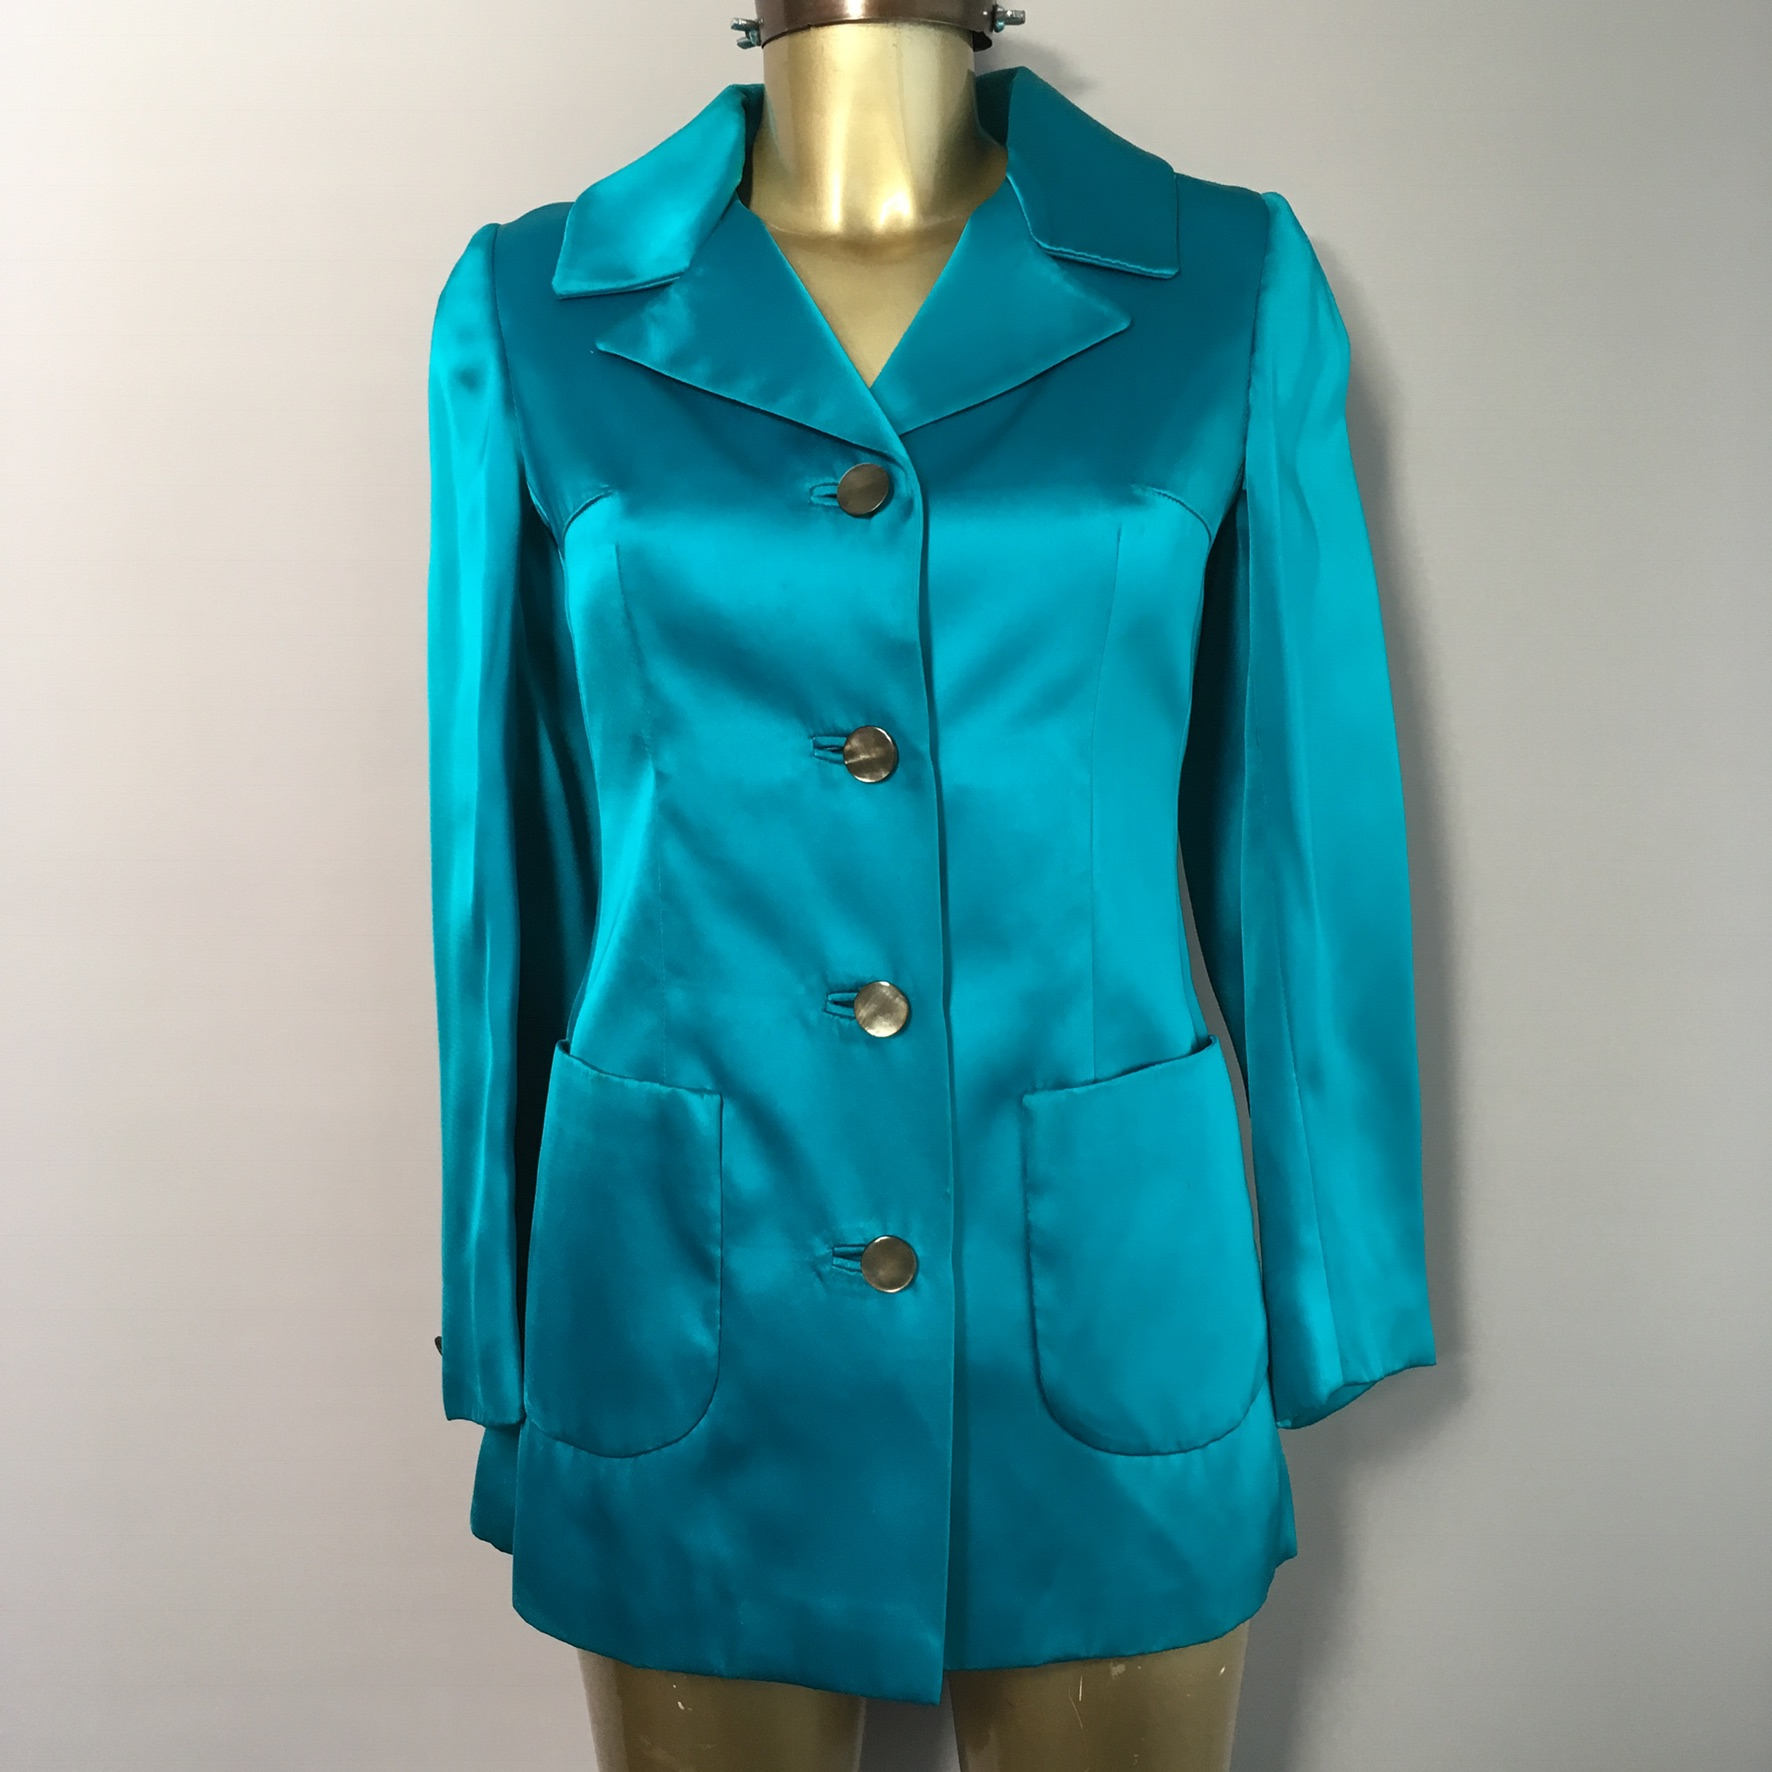 Stunning 1960s Turquoise Blue Satin Jacket Size 8uk | Etsy UK